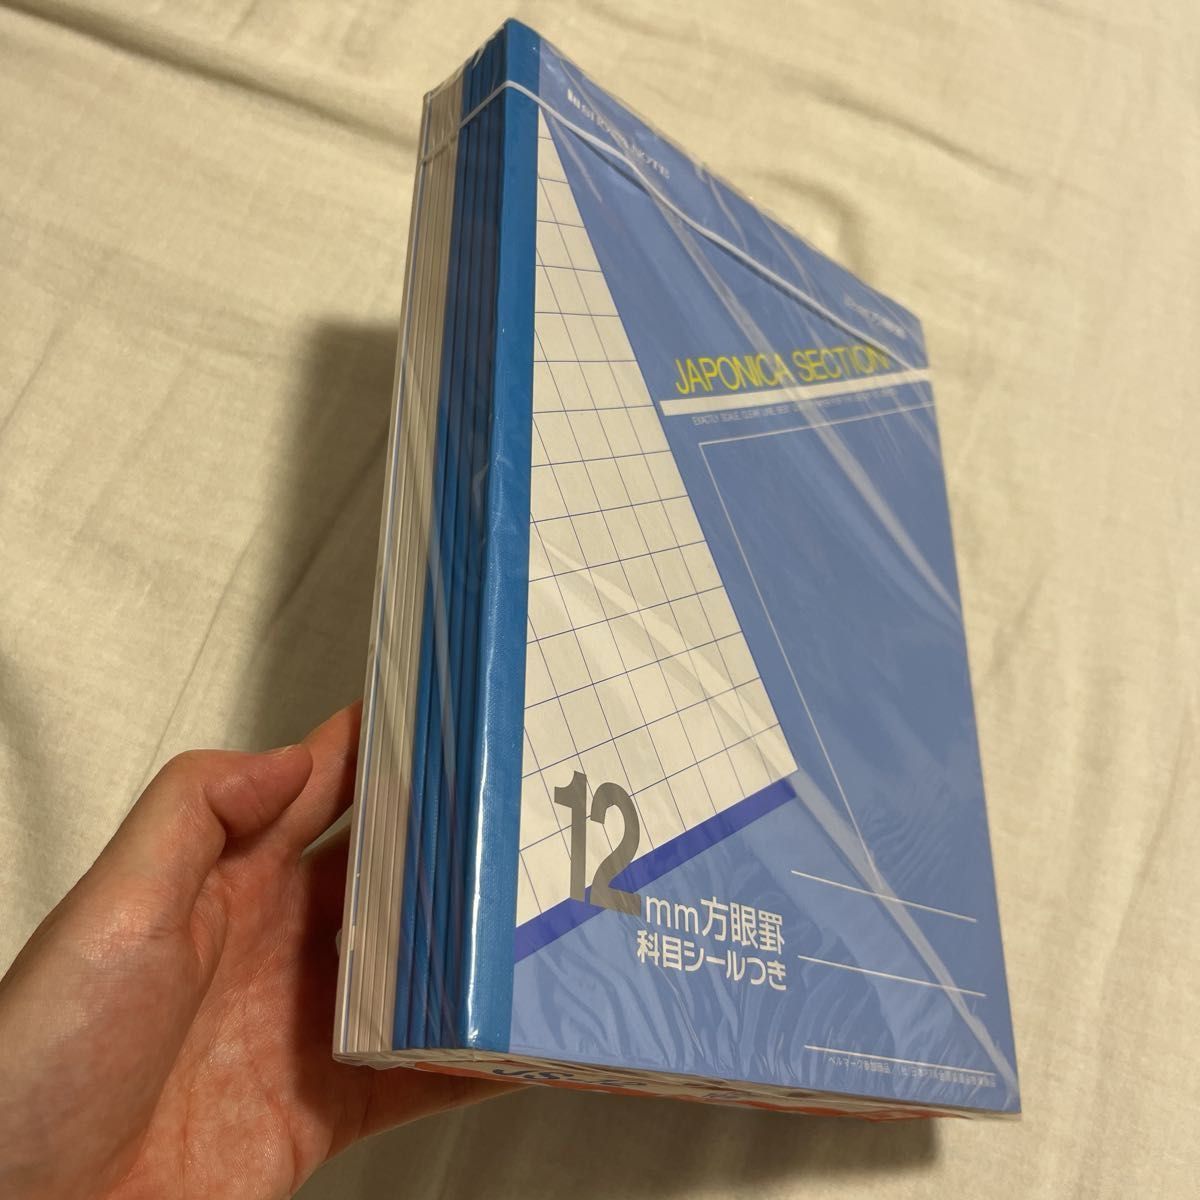 ショウワノート/ジャポニカ学習帳 ジャポニカセクション 12mm方眼罫 10冊セット